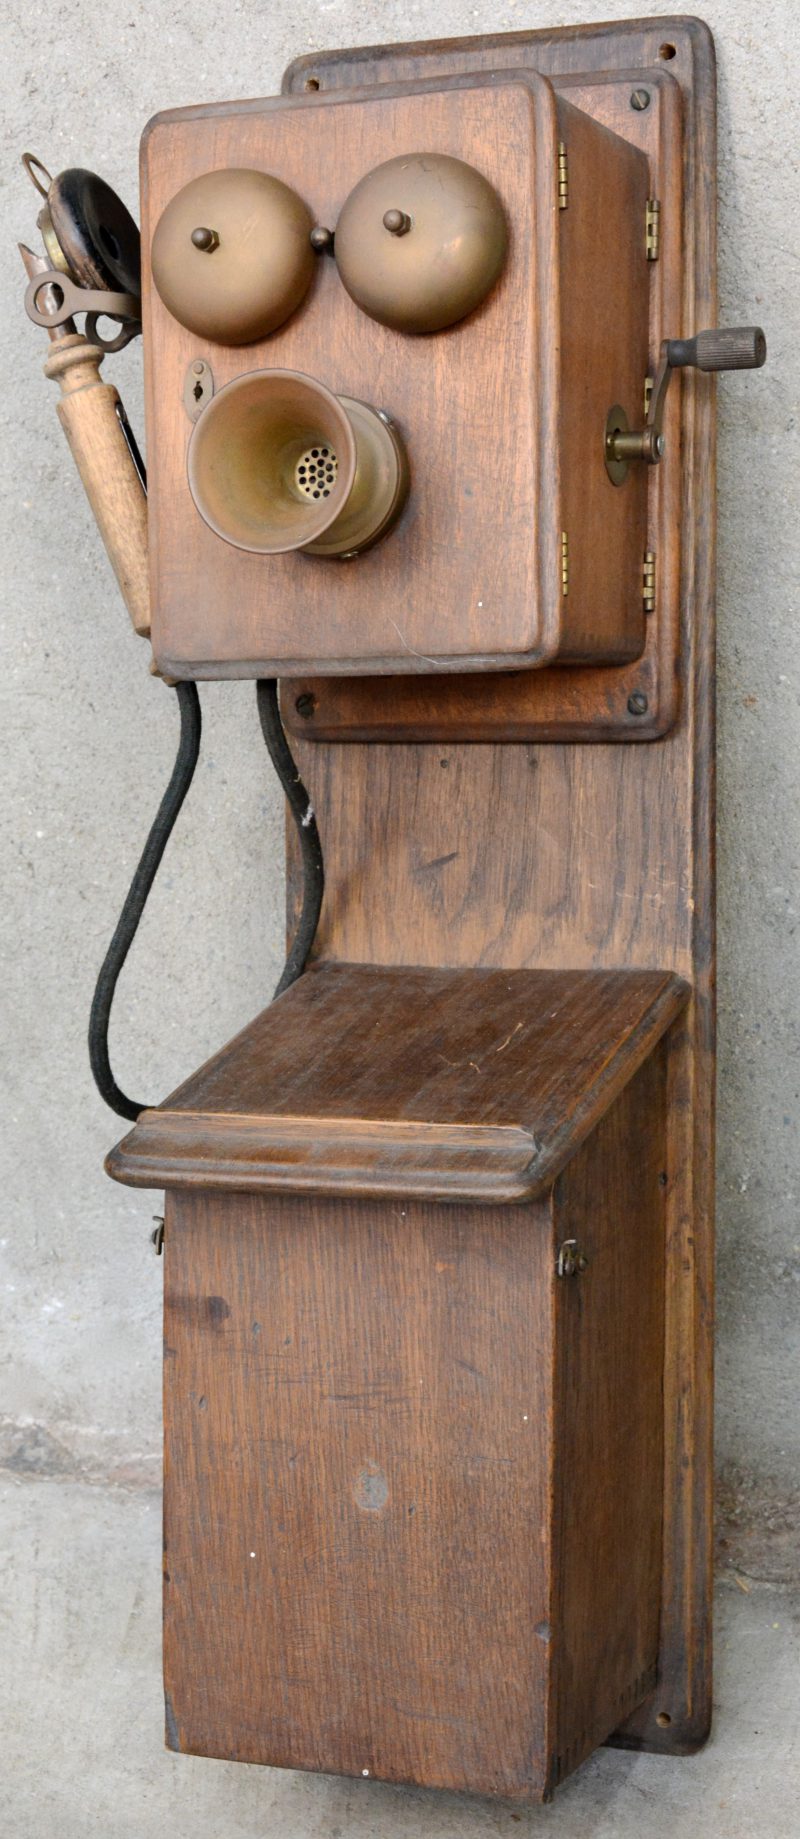 Een oude wandtelefoon in houten kast. Hoorn niet origineel.